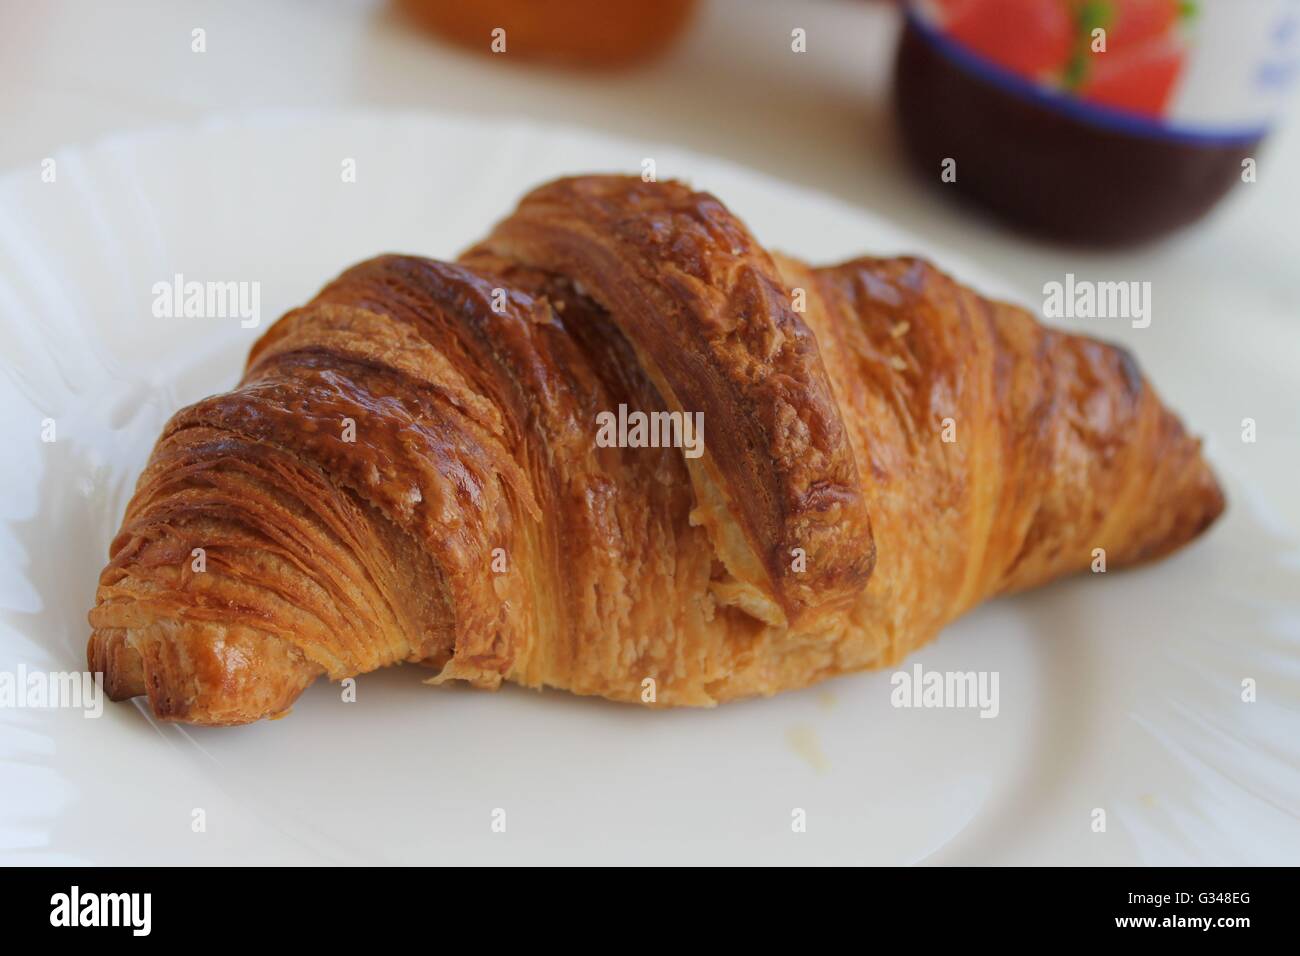 Freshly baked croissant, French breakfast, baked goods Stock Photo